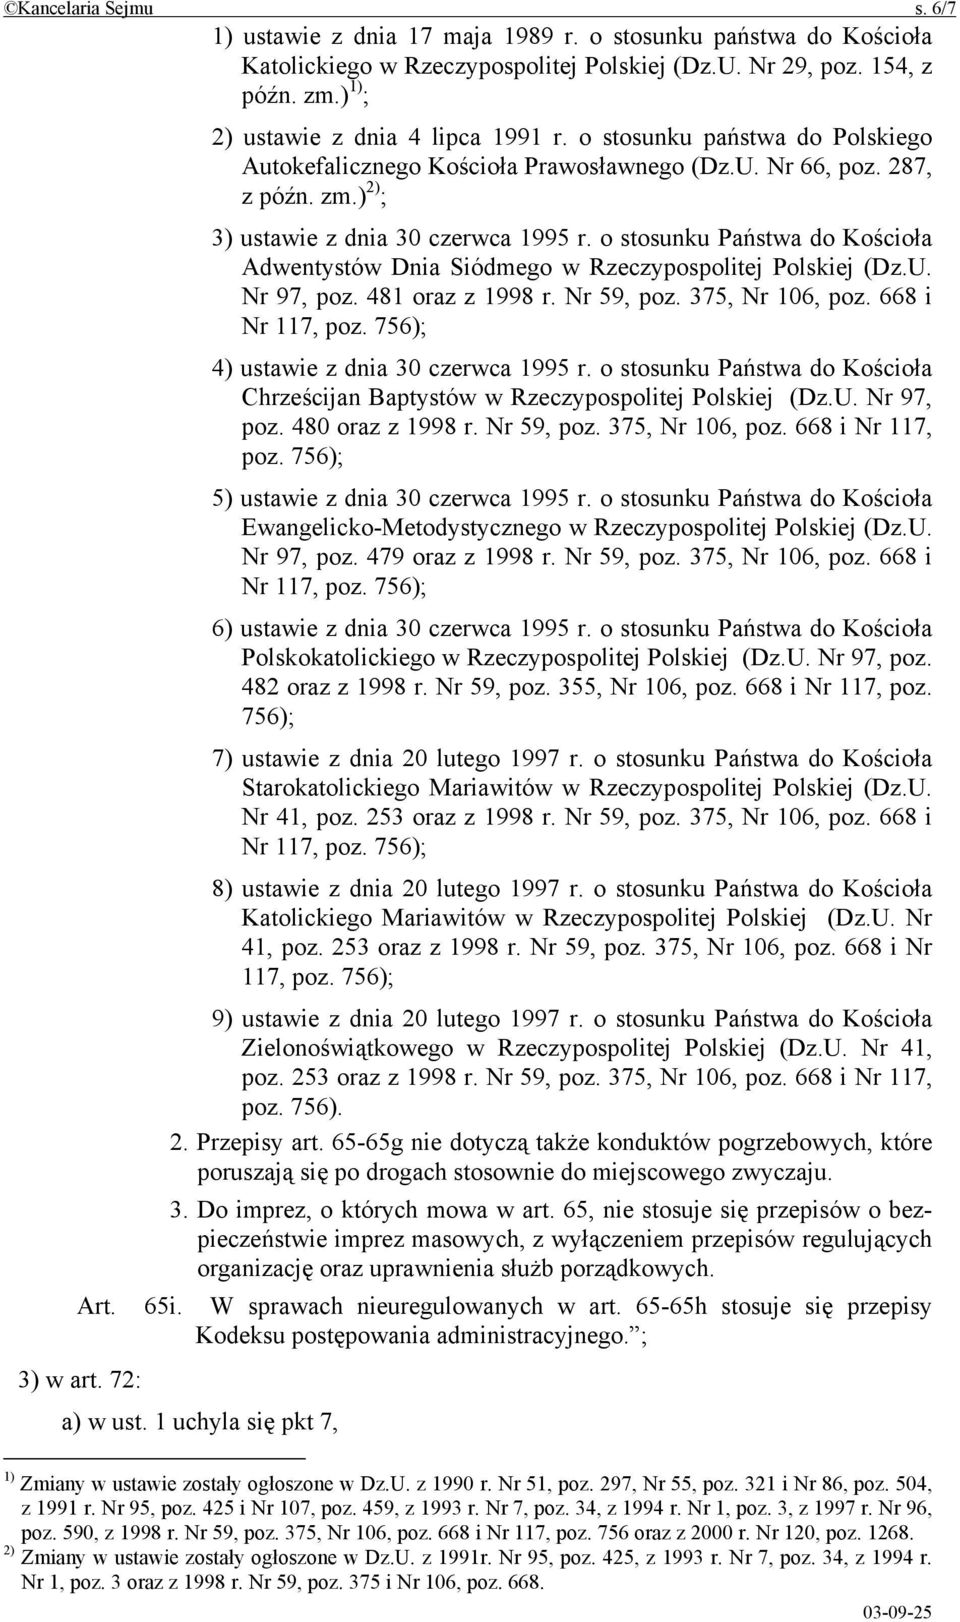 o stosunku Państwa do Kościoła Adwentystów Dnia Siódmego w Rzeczypospolitej Polskiej (Dz.U. Nr 97, poz. 481 oraz z 1998 r. Nr 59, poz. 375, Nr 106, poz. 668 i Nr 117, poz.